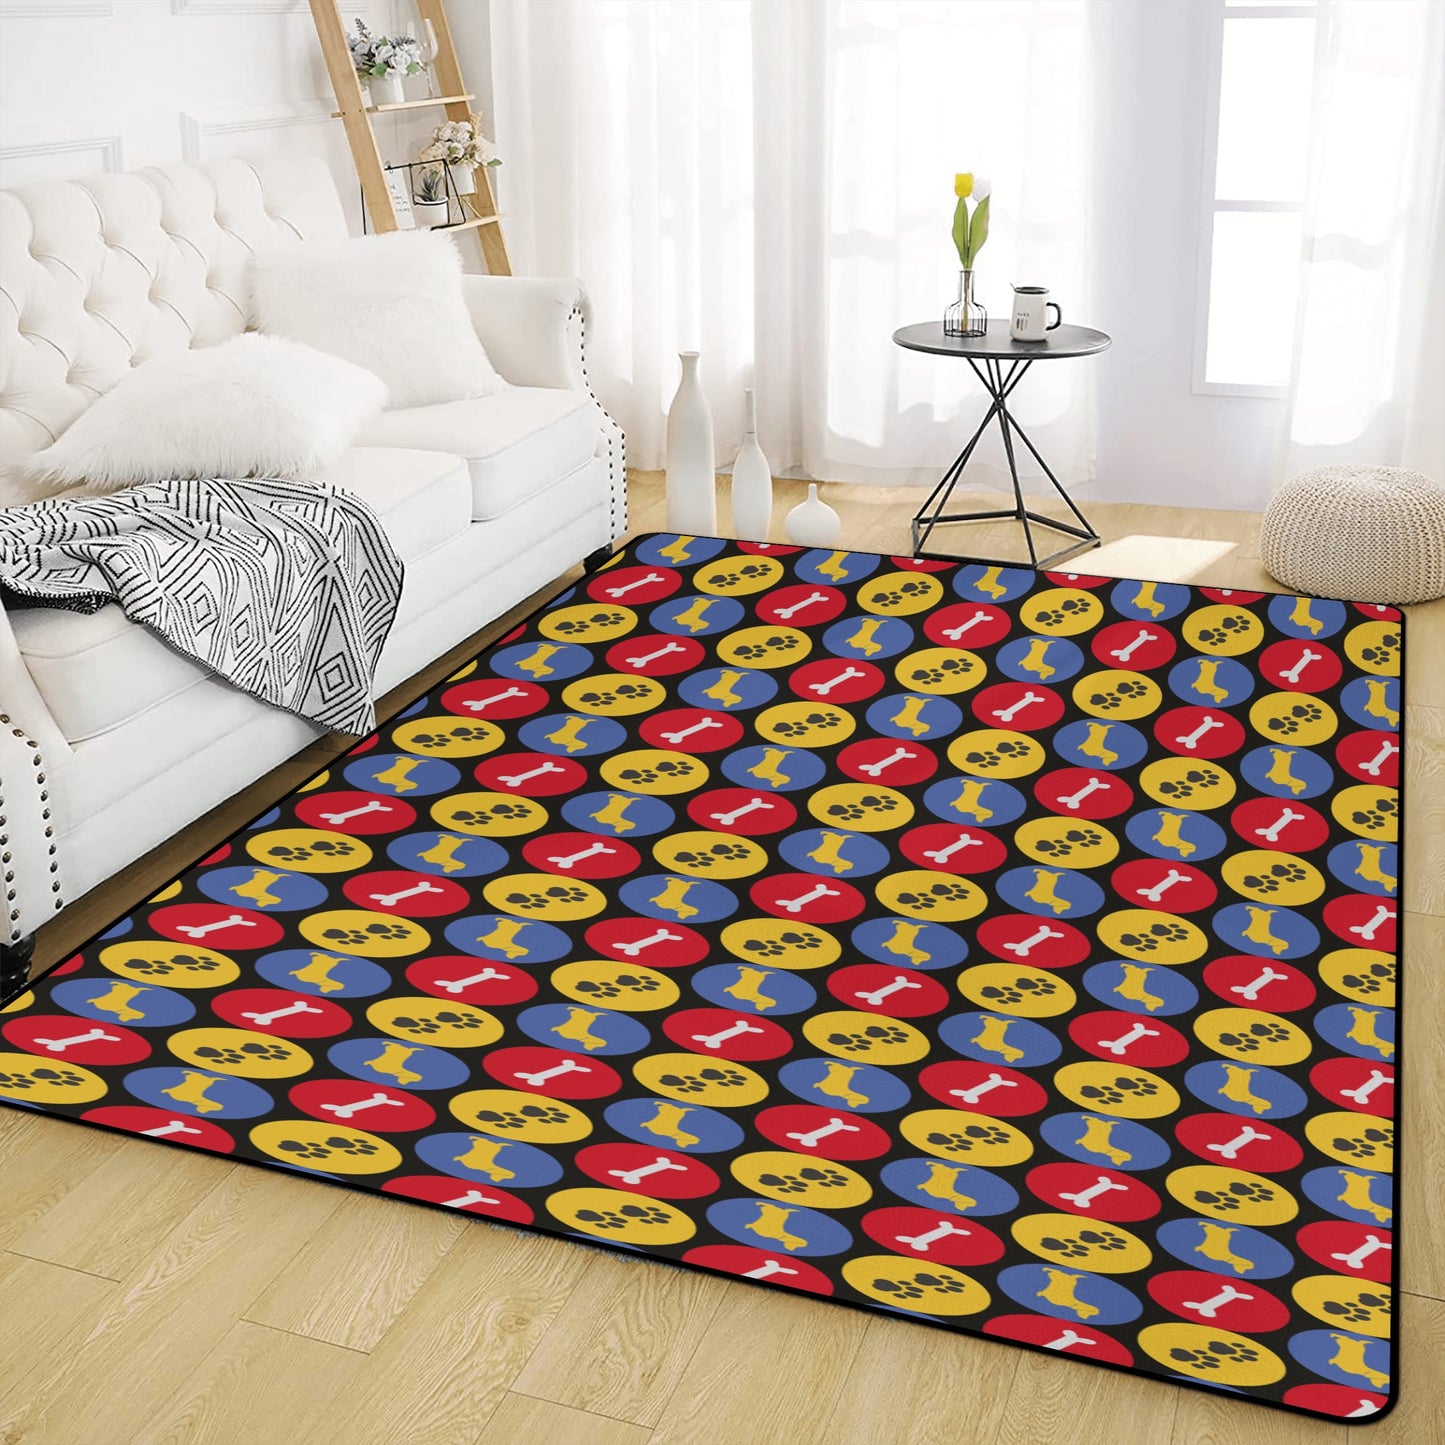 Giselle - Living Room Carpet Rug